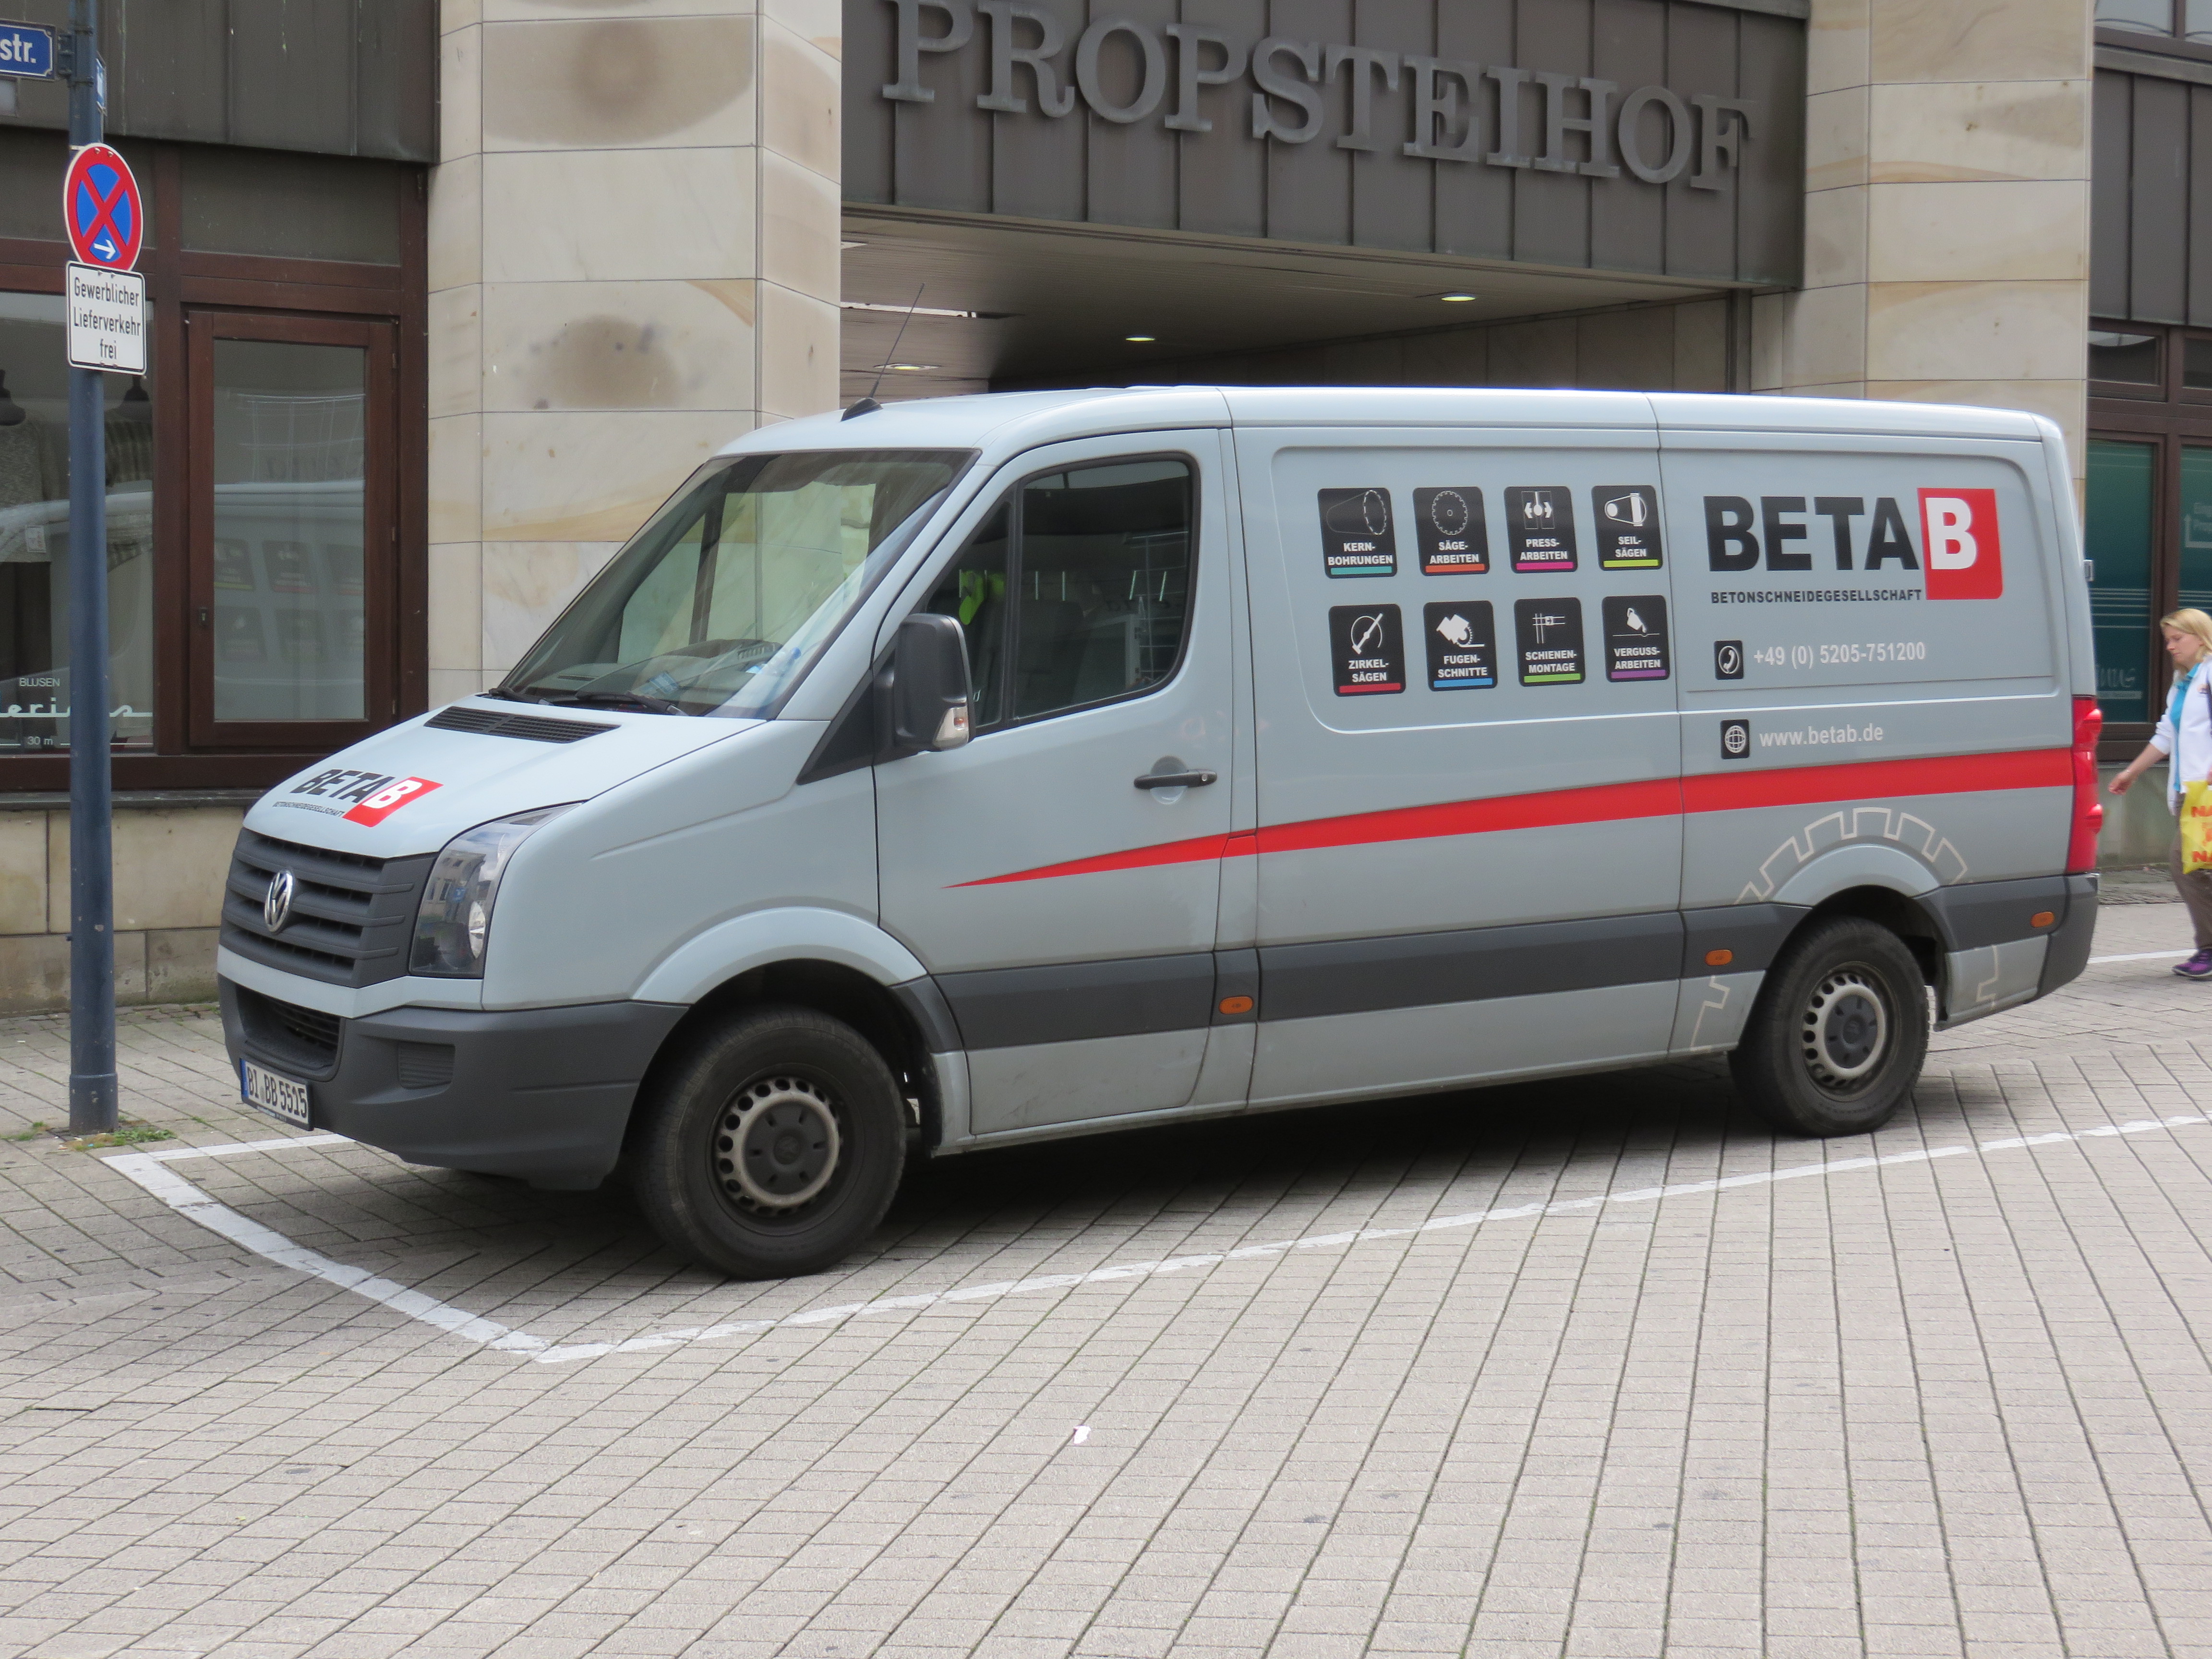 Firmenwagen, gesehen in Dortmund